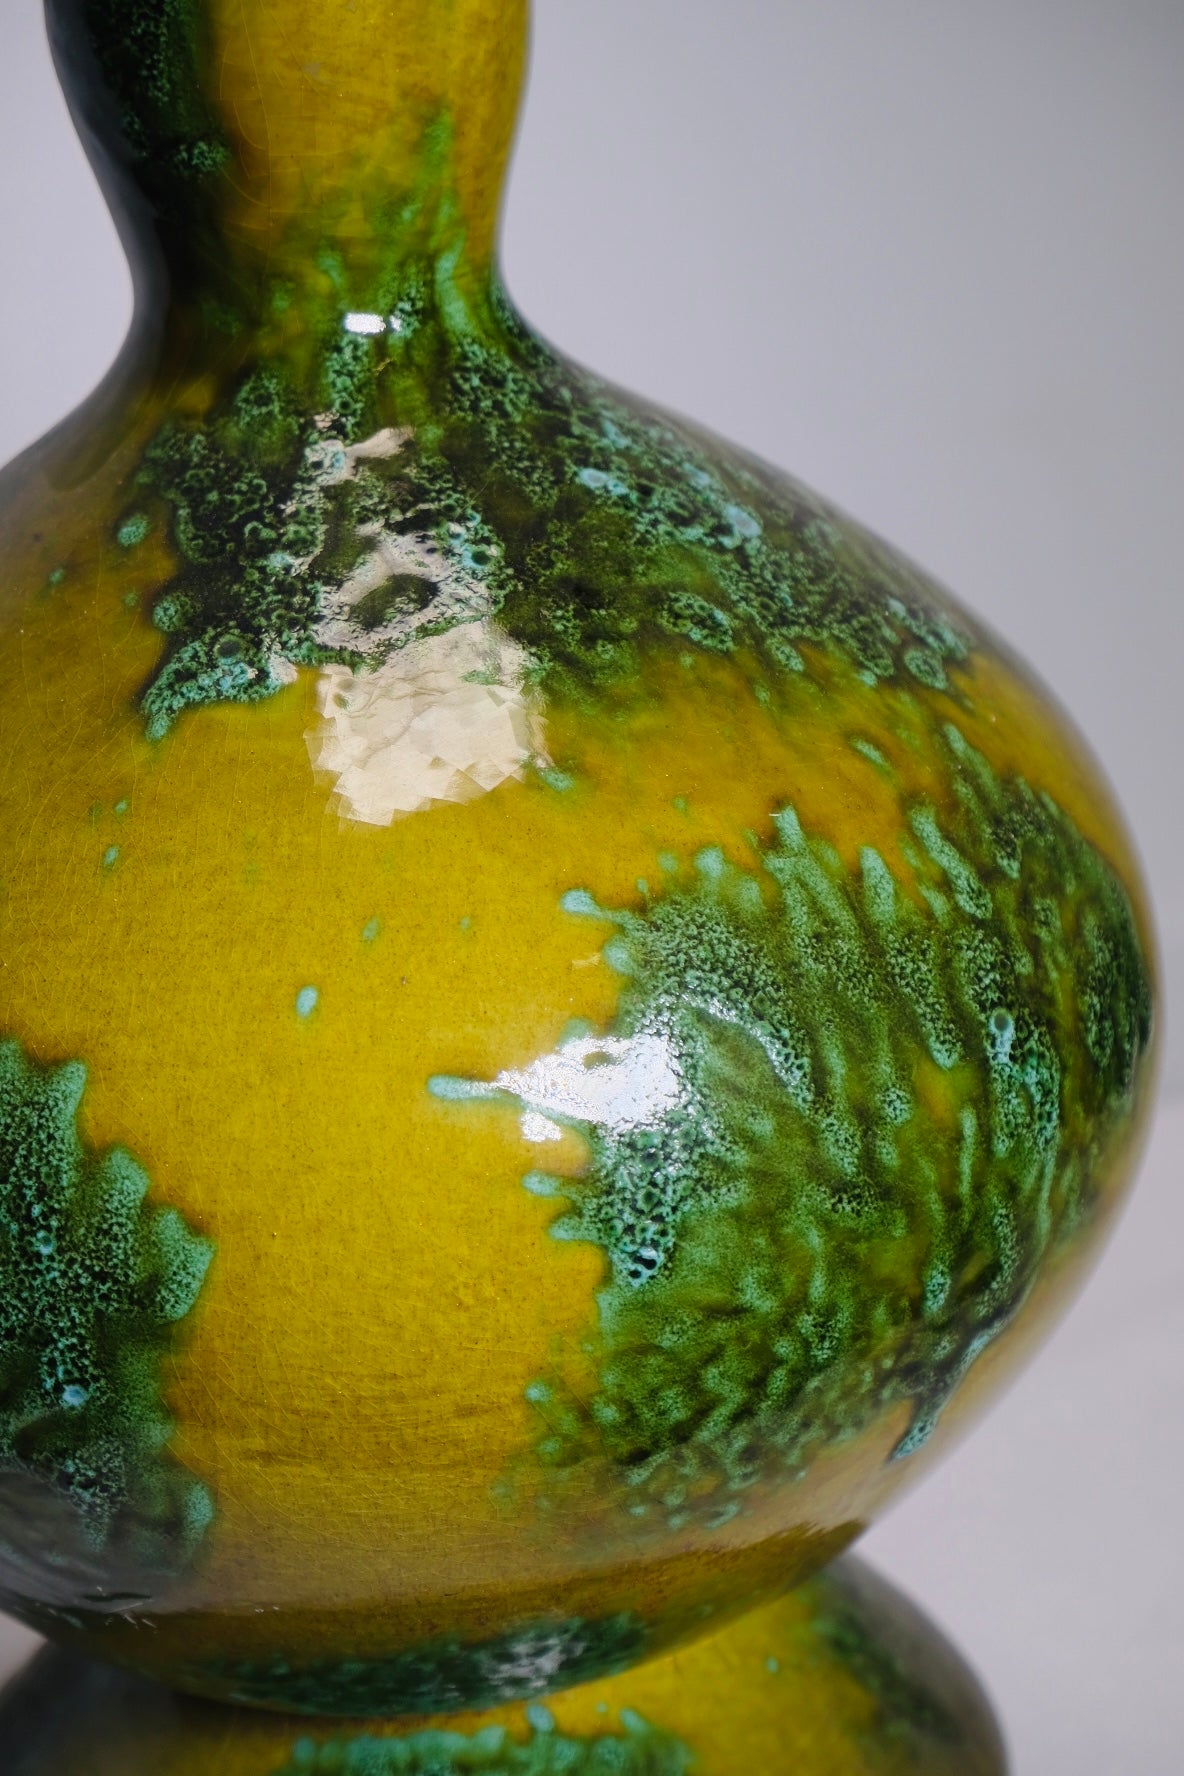 Green 1960s Gourd-like Glaze Lamp (Vintage) (SOLD)